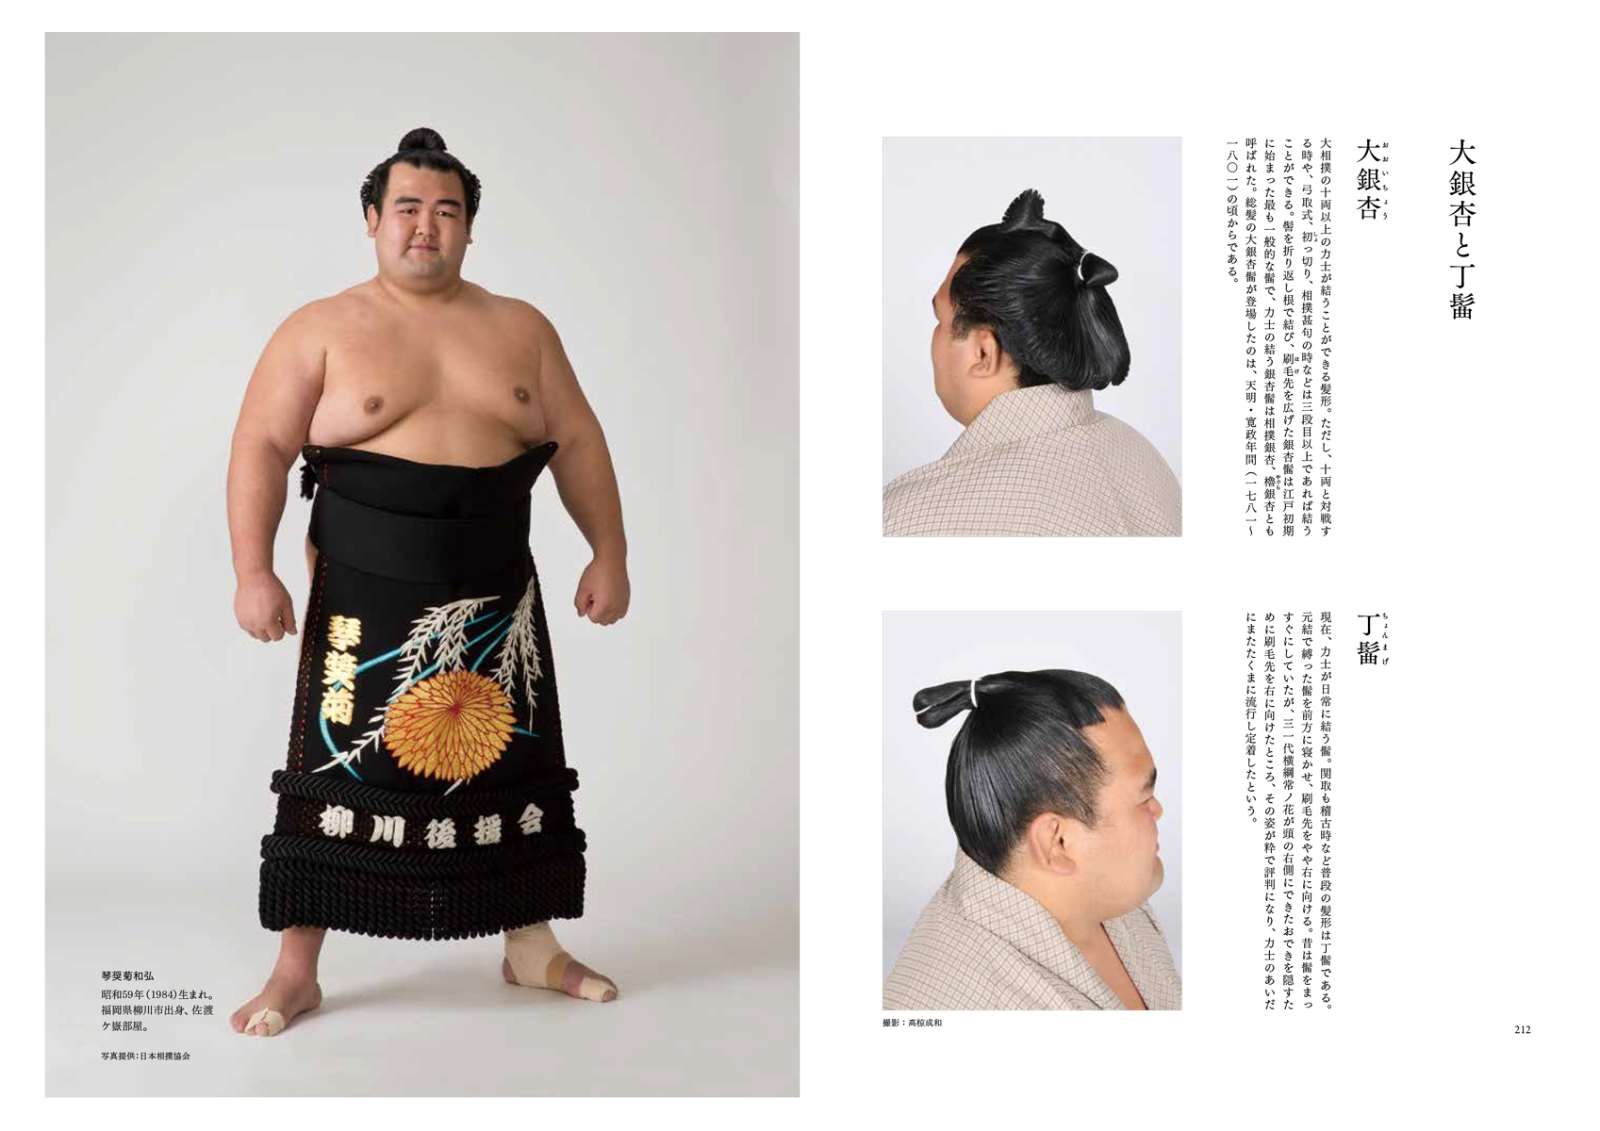 楽天ブックス 日本髪大全 古代から現代まで髪型の歴史と結い方がわかる 田中圭子 本